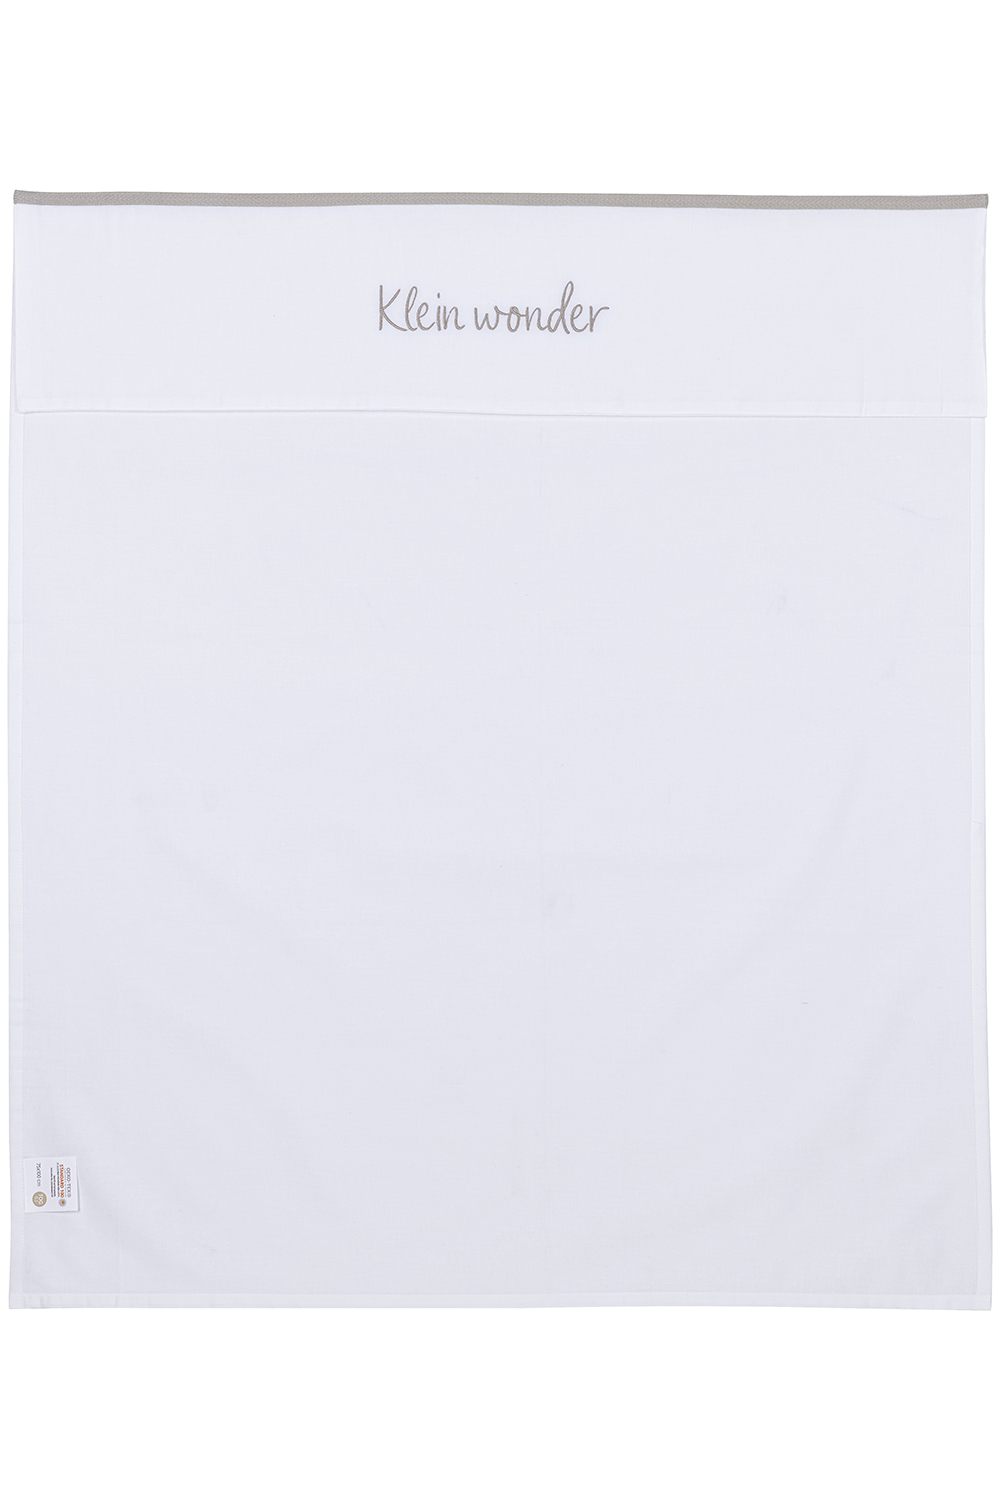 Wieglaken Klein Wonder - greige - 75x100cm